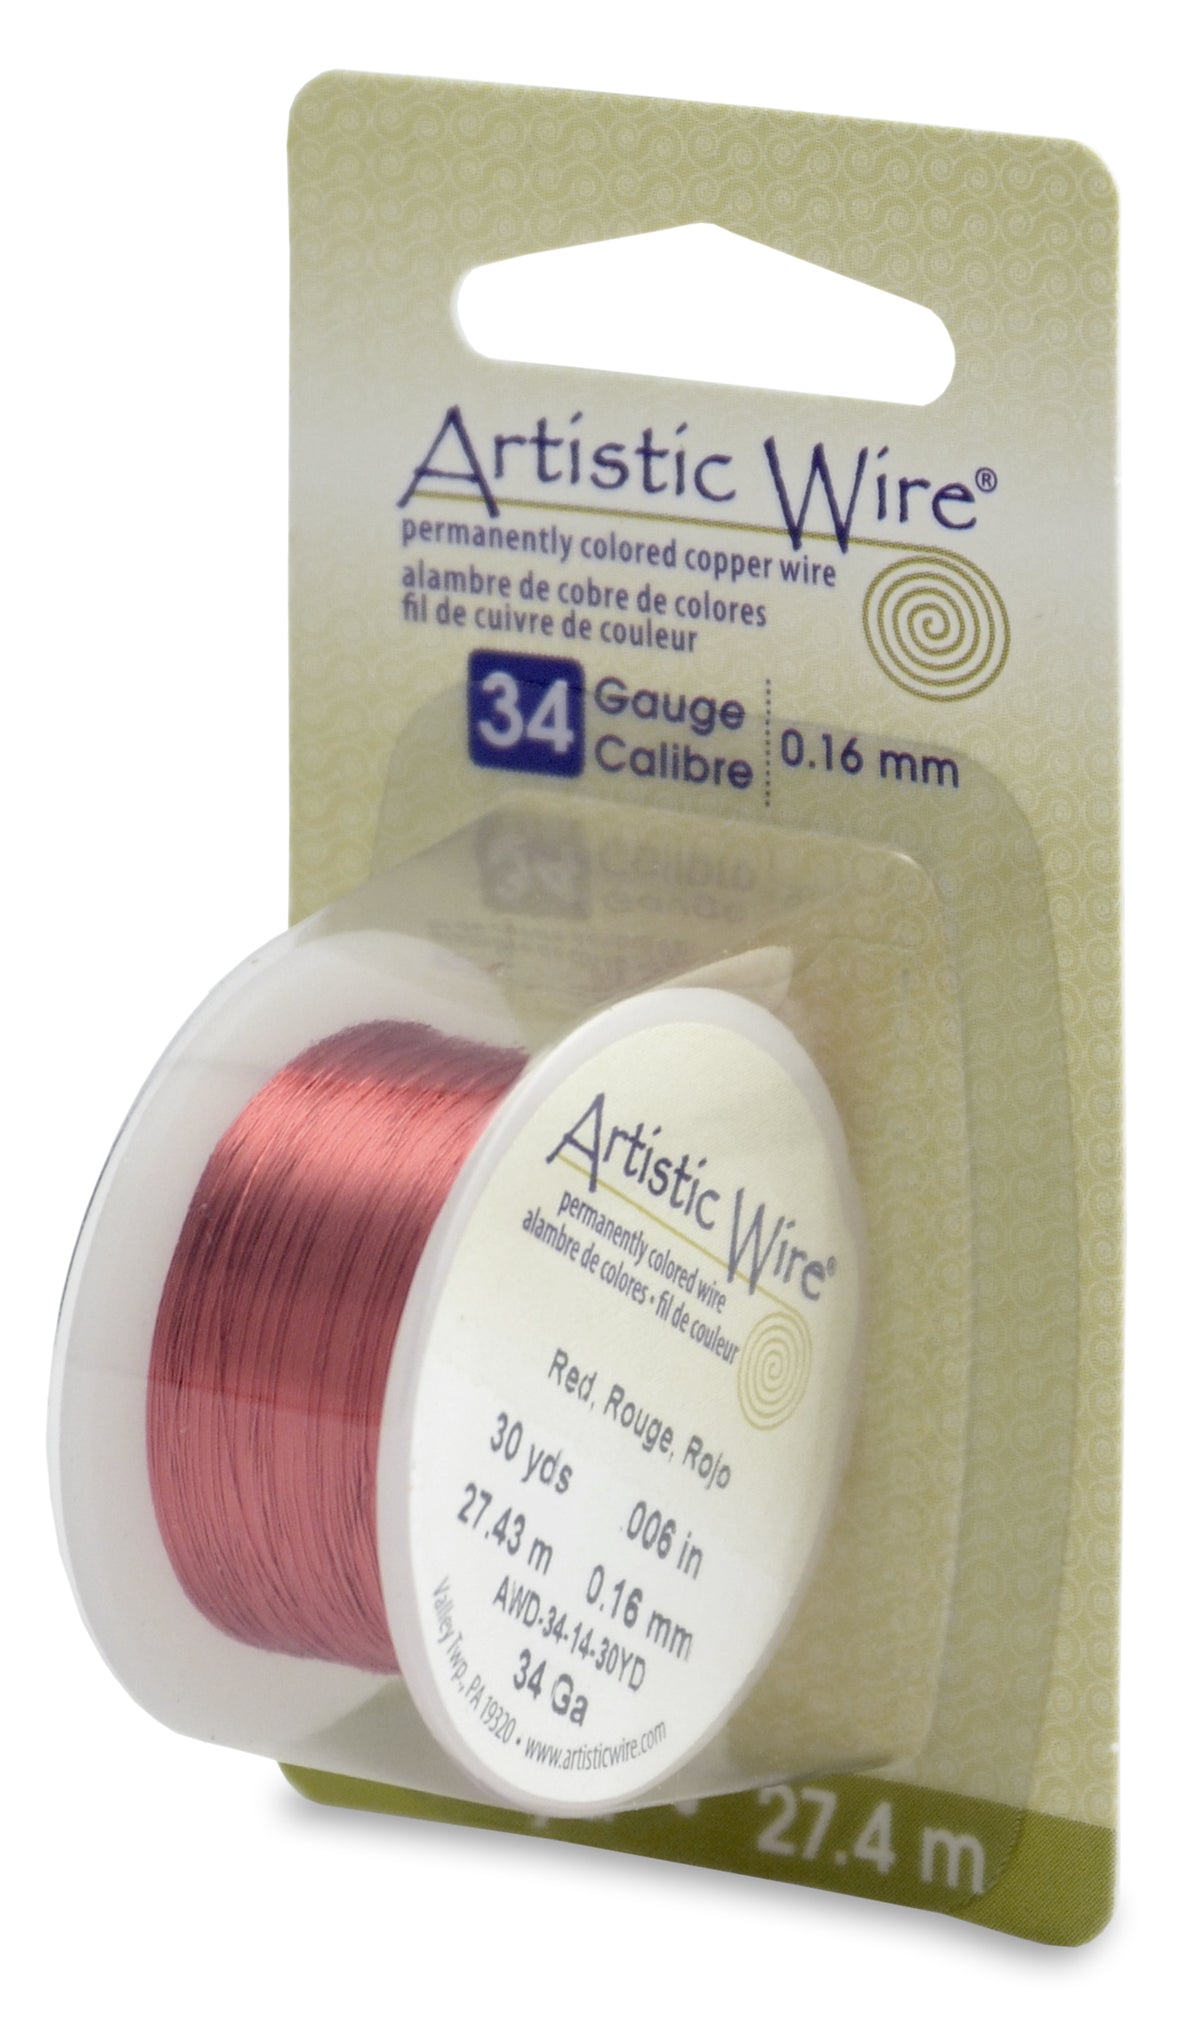 Artistic Wire, 34 Gauge (.16 mm), Red, 30 yd (27.4 m)